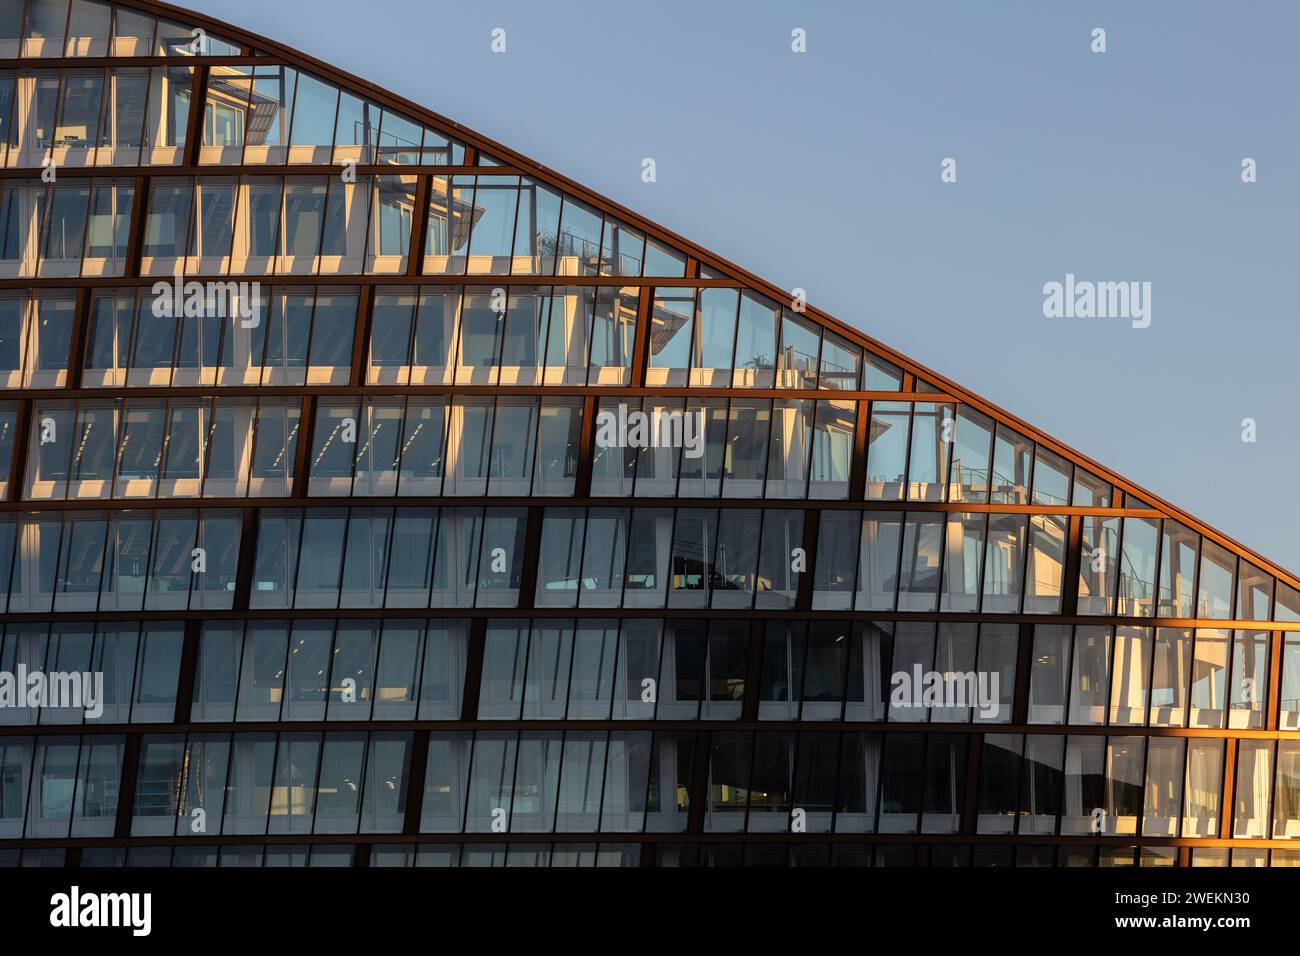 Image des niveaux supérieurs de l'emblématique One Angel Square à Manchester, au Royaume-Uni, siège du Co-operative Group. Pris dans un beau soleil à l'heure dorée Banque D'Images